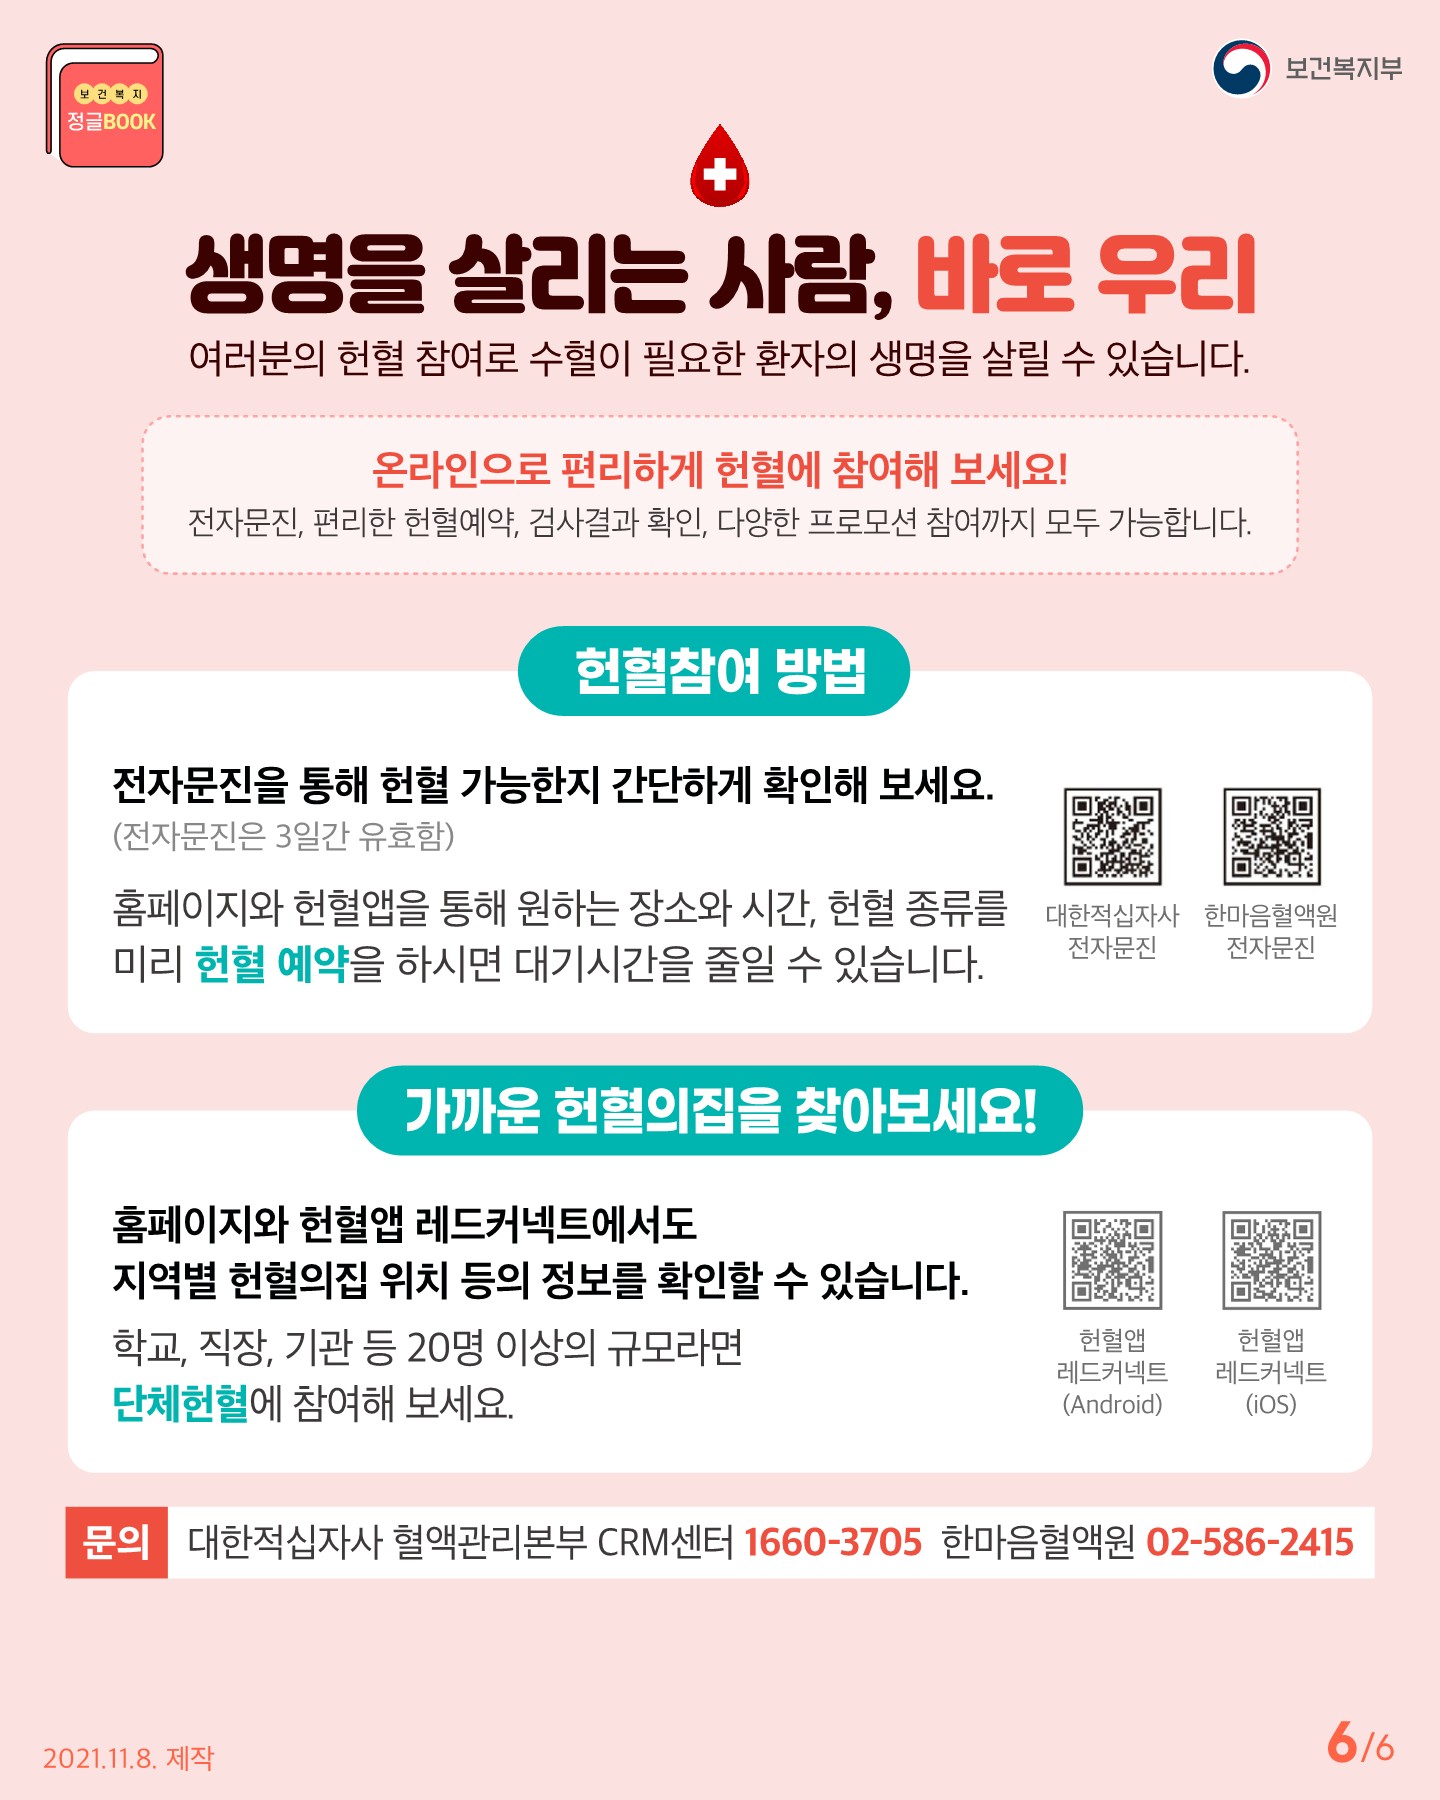 전라북도교육청 인성건강과_Q_A로 알아보는 헌혈 궁금증(카드뉴스)_6